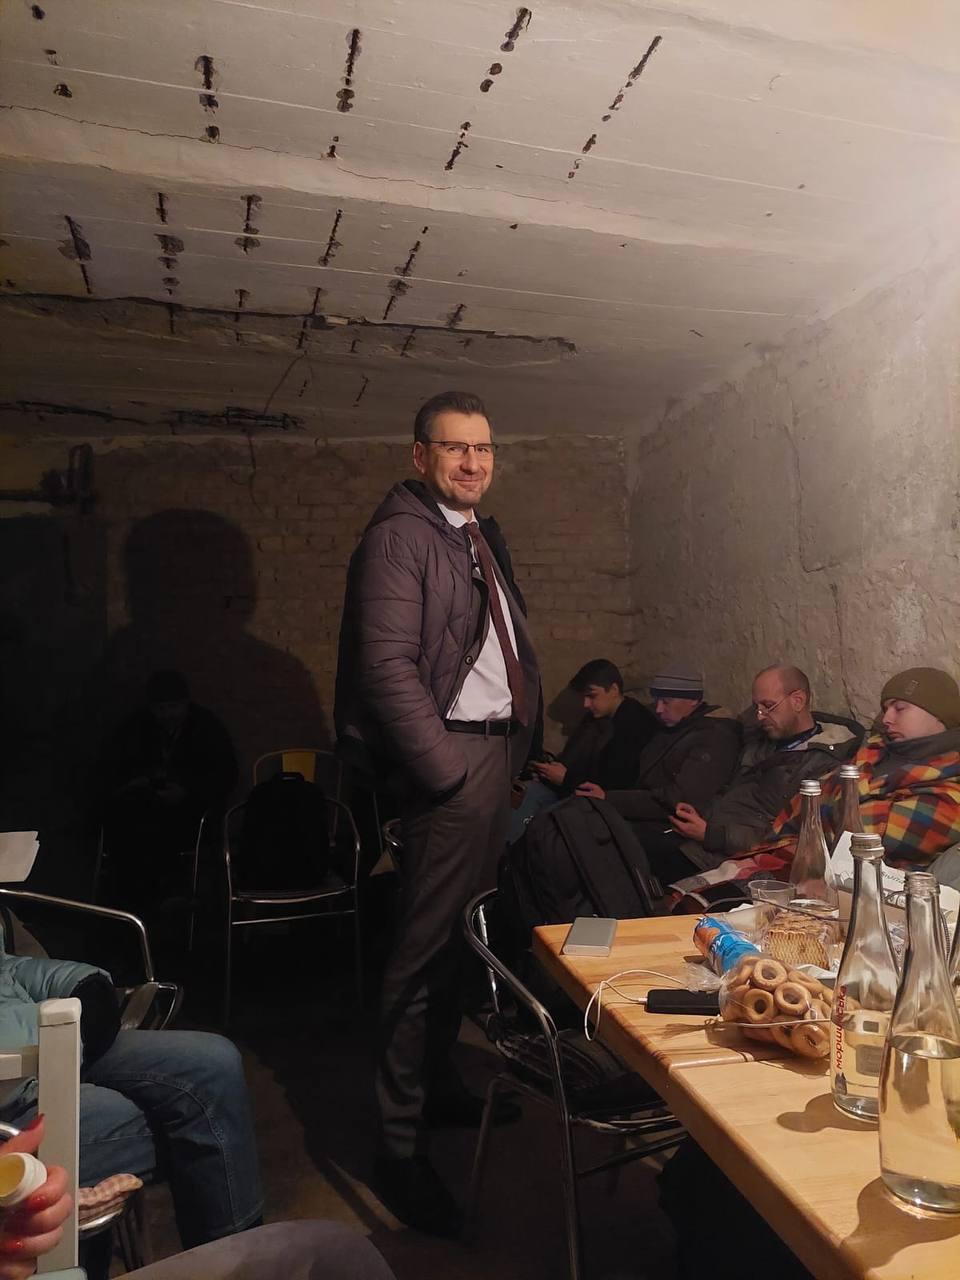 Вадим Карп’як, ведучий «Свободи слова», зранку 24 лютого виїхав на роботу з дому у Бучі і почав вести гостьові студії